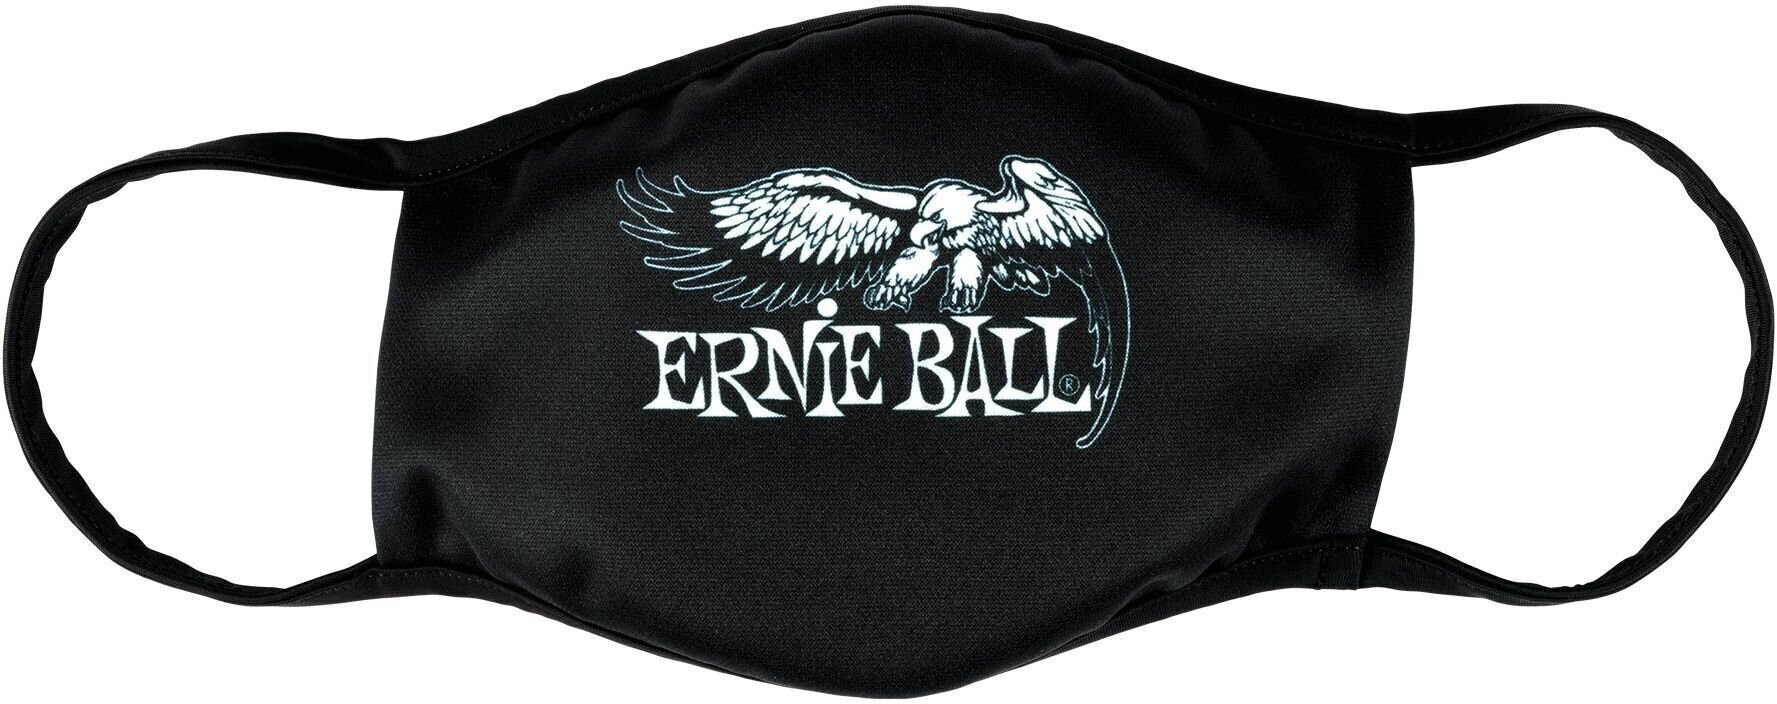 Mask Ernie Ball 4909 Mask